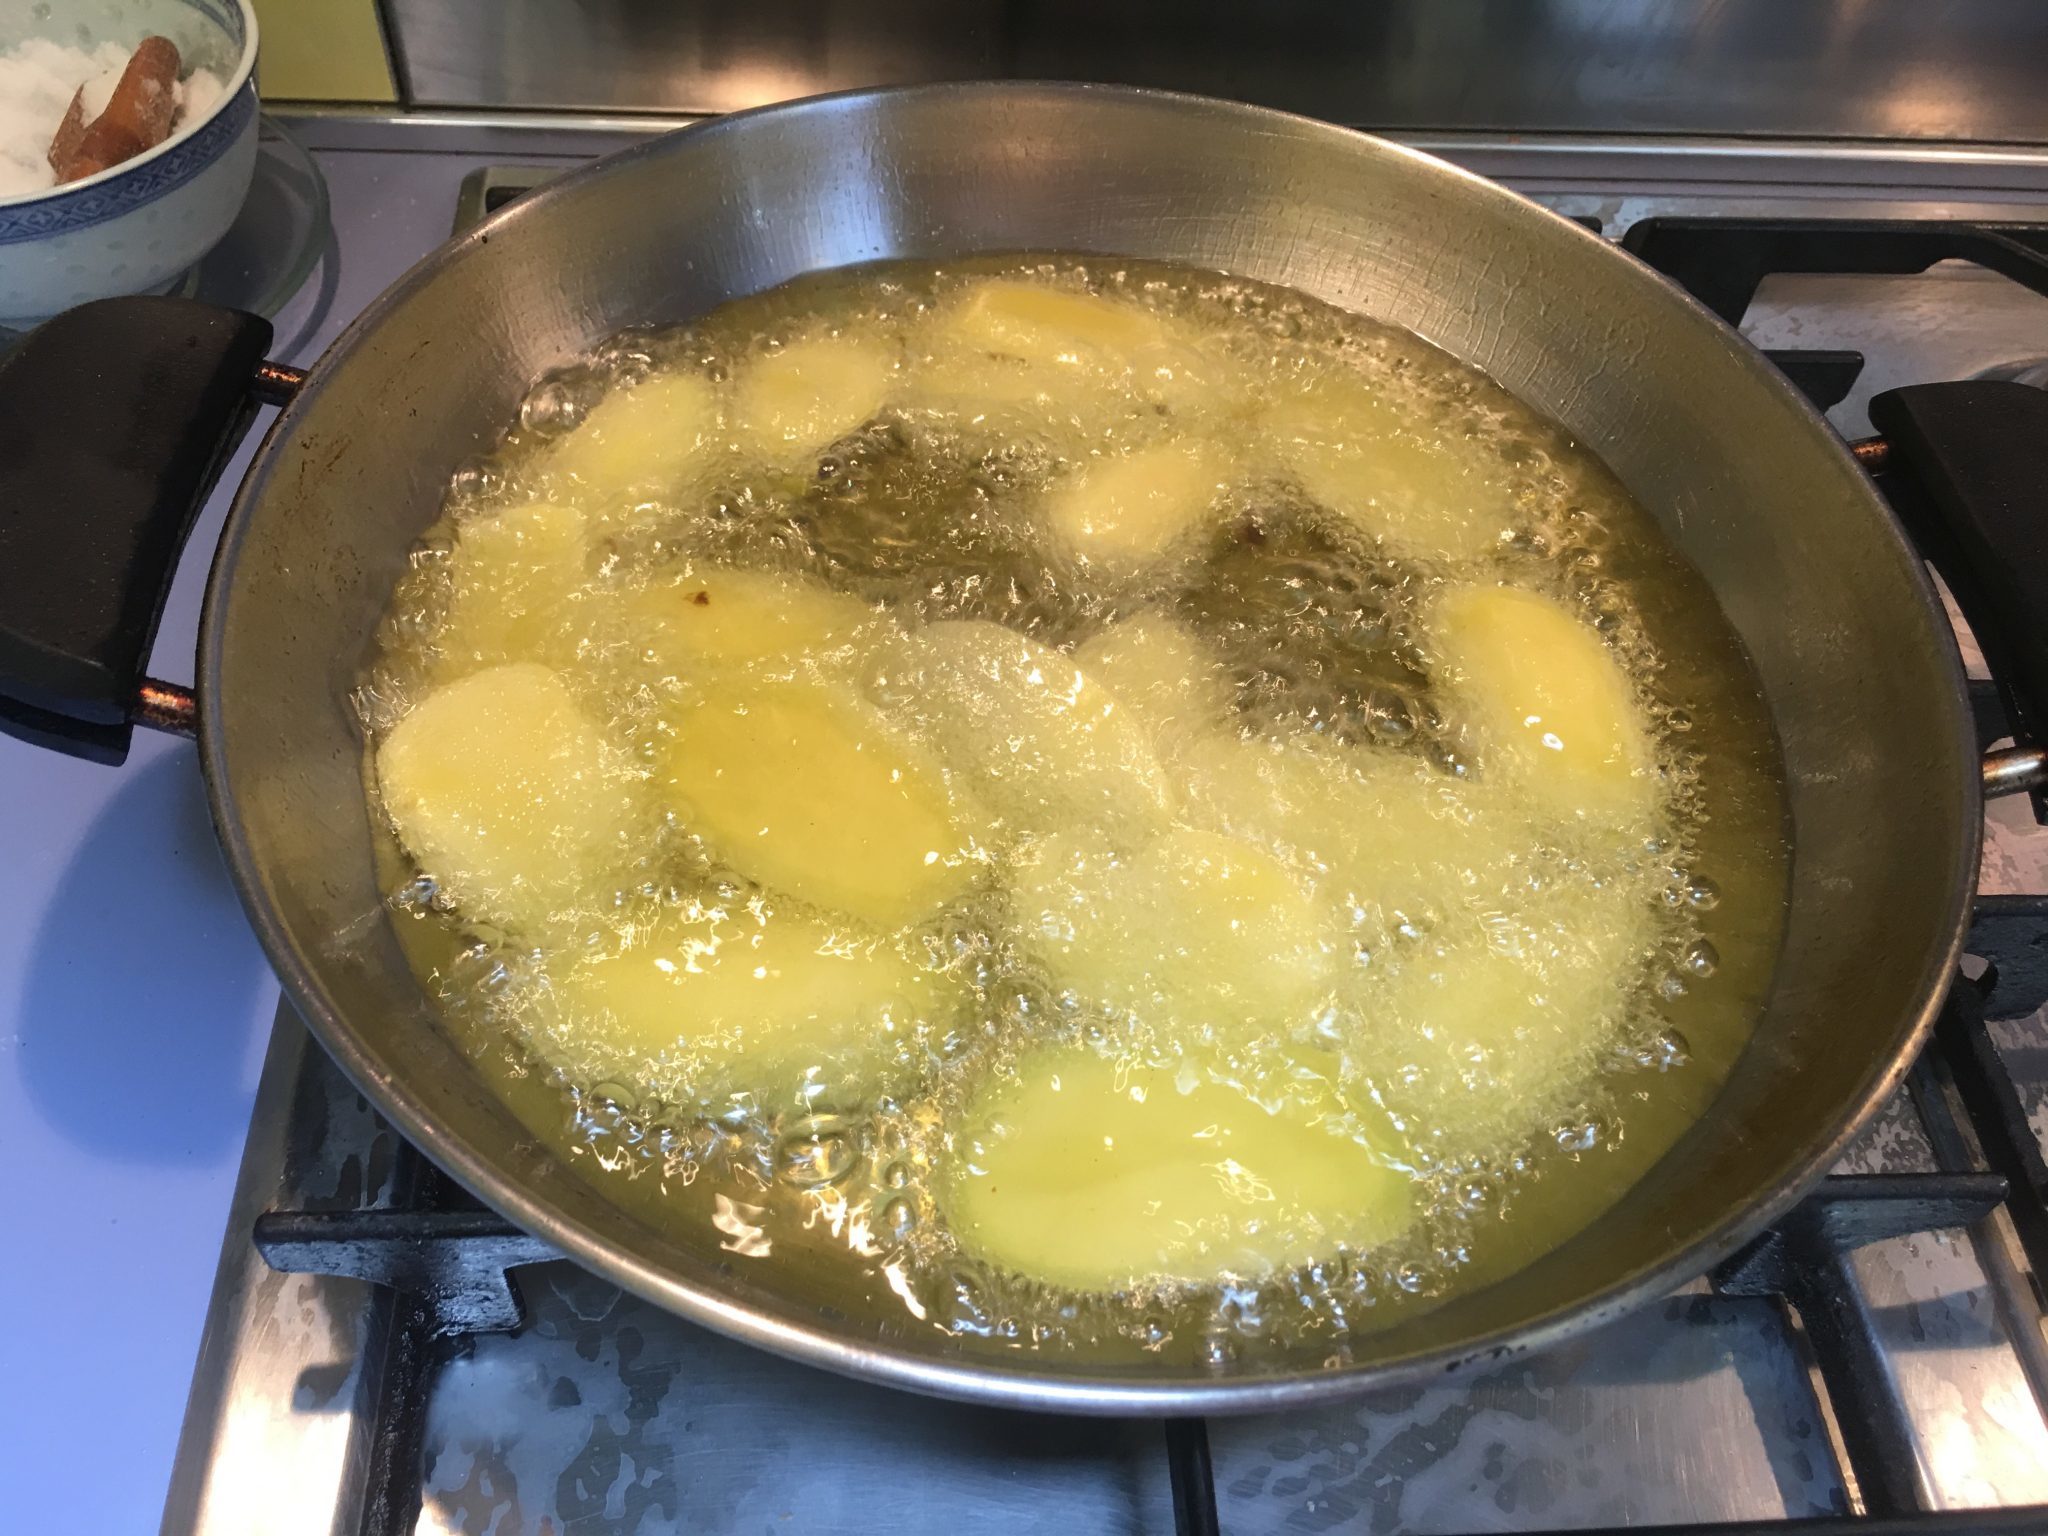 Patate alla parmigiana - frittura delle patate